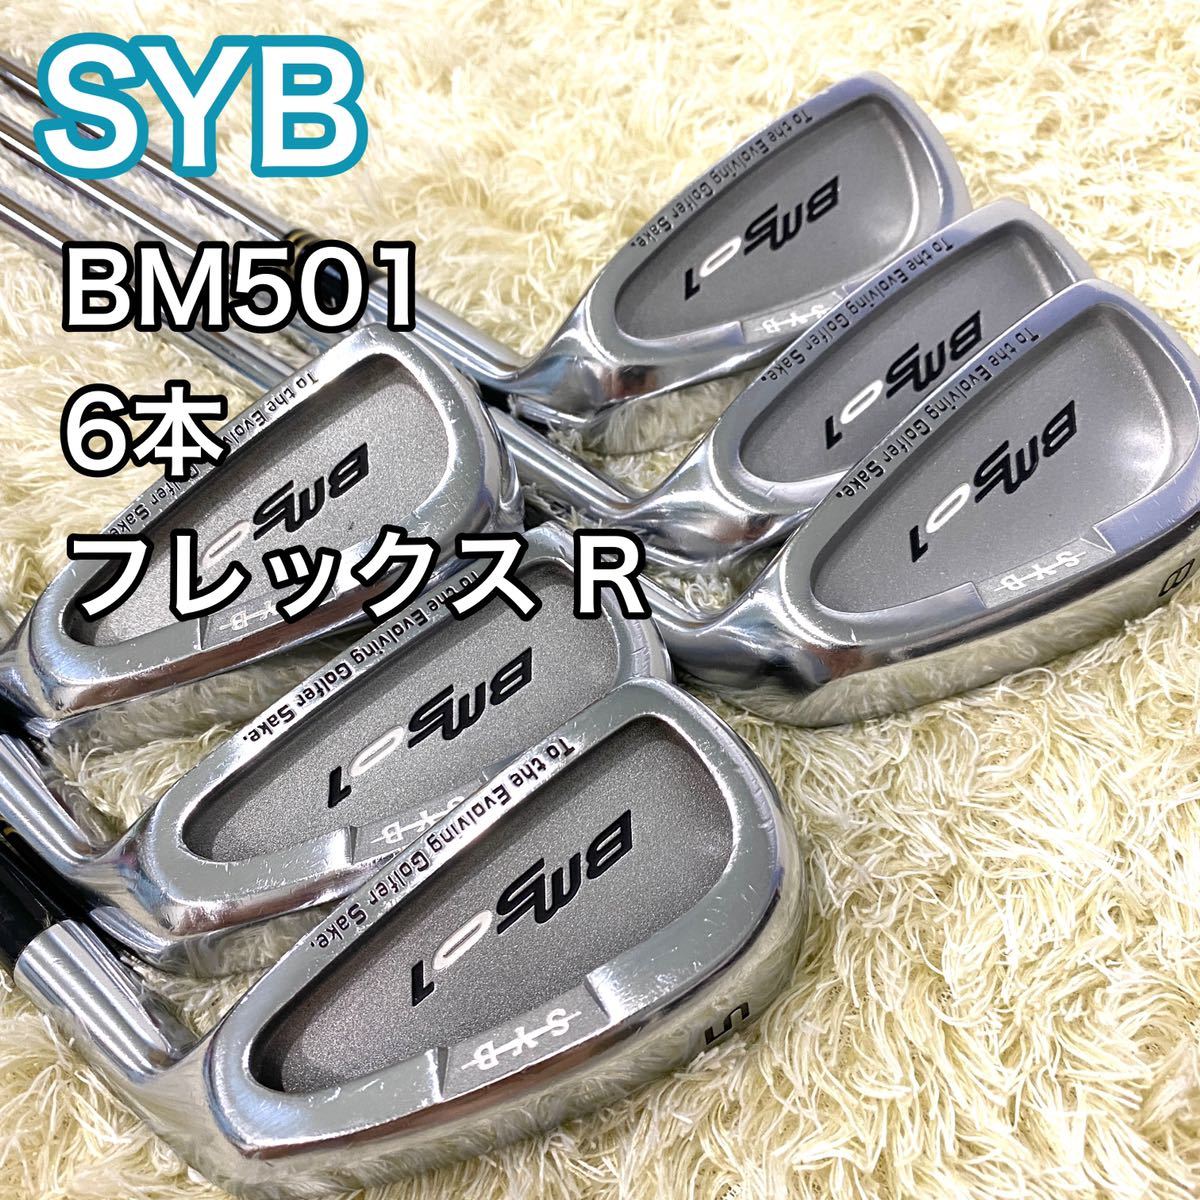 SYB サイブ BM501 アイアン 6本 フレックス R ゴルフクラブ ゴルフ 